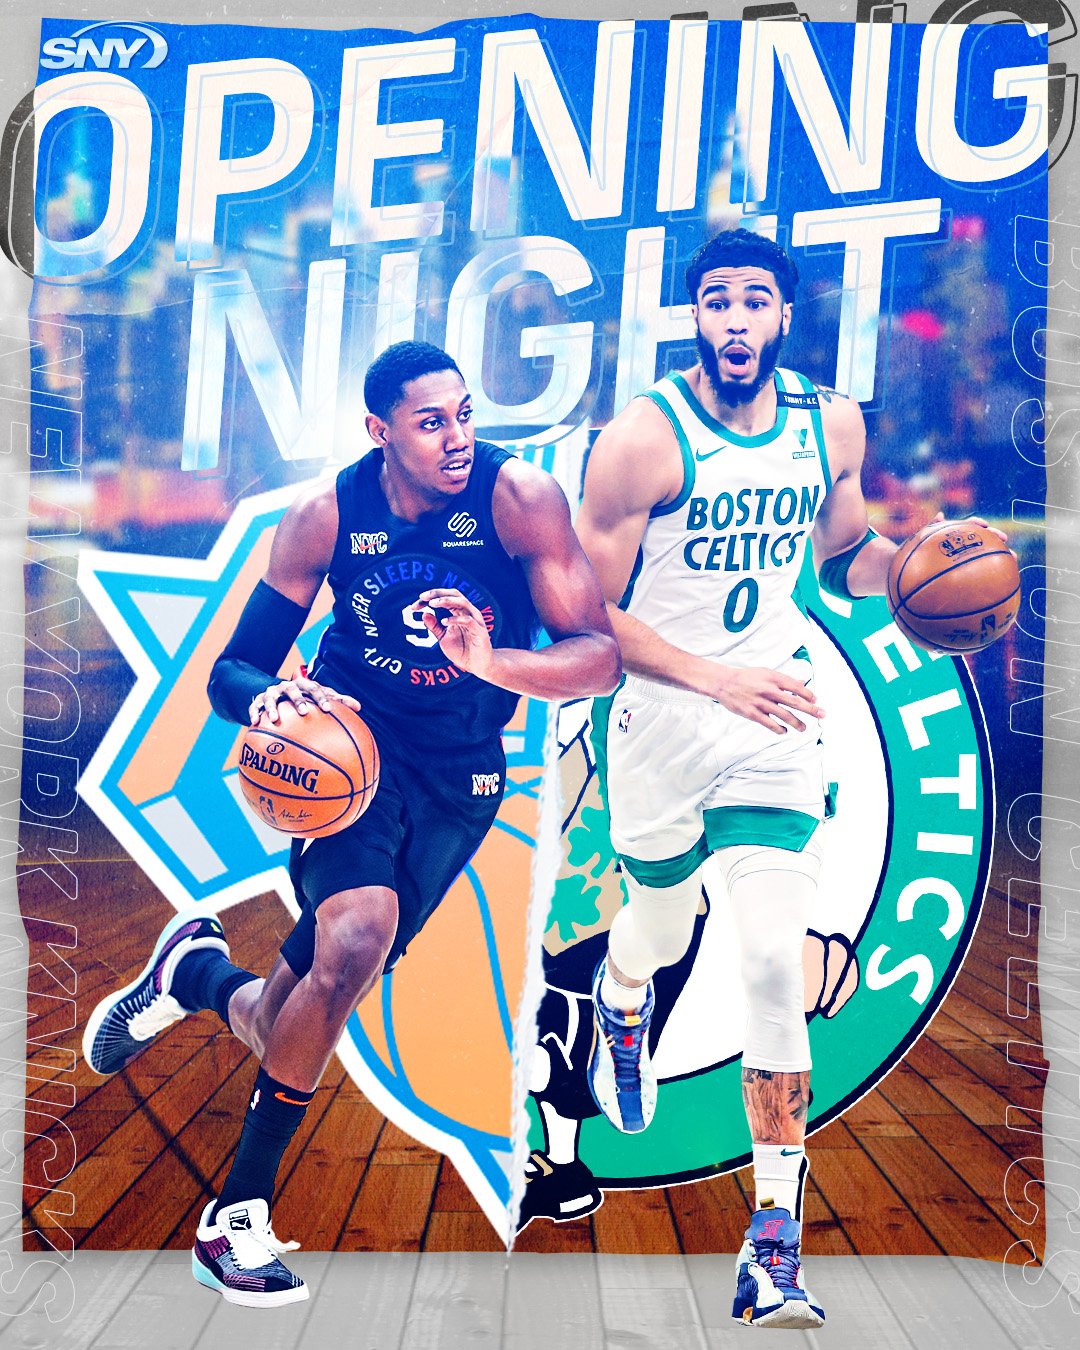 2021-22-opening day-Knicks-RJ BARRETT-JAYSON TATUM-v3.jpg